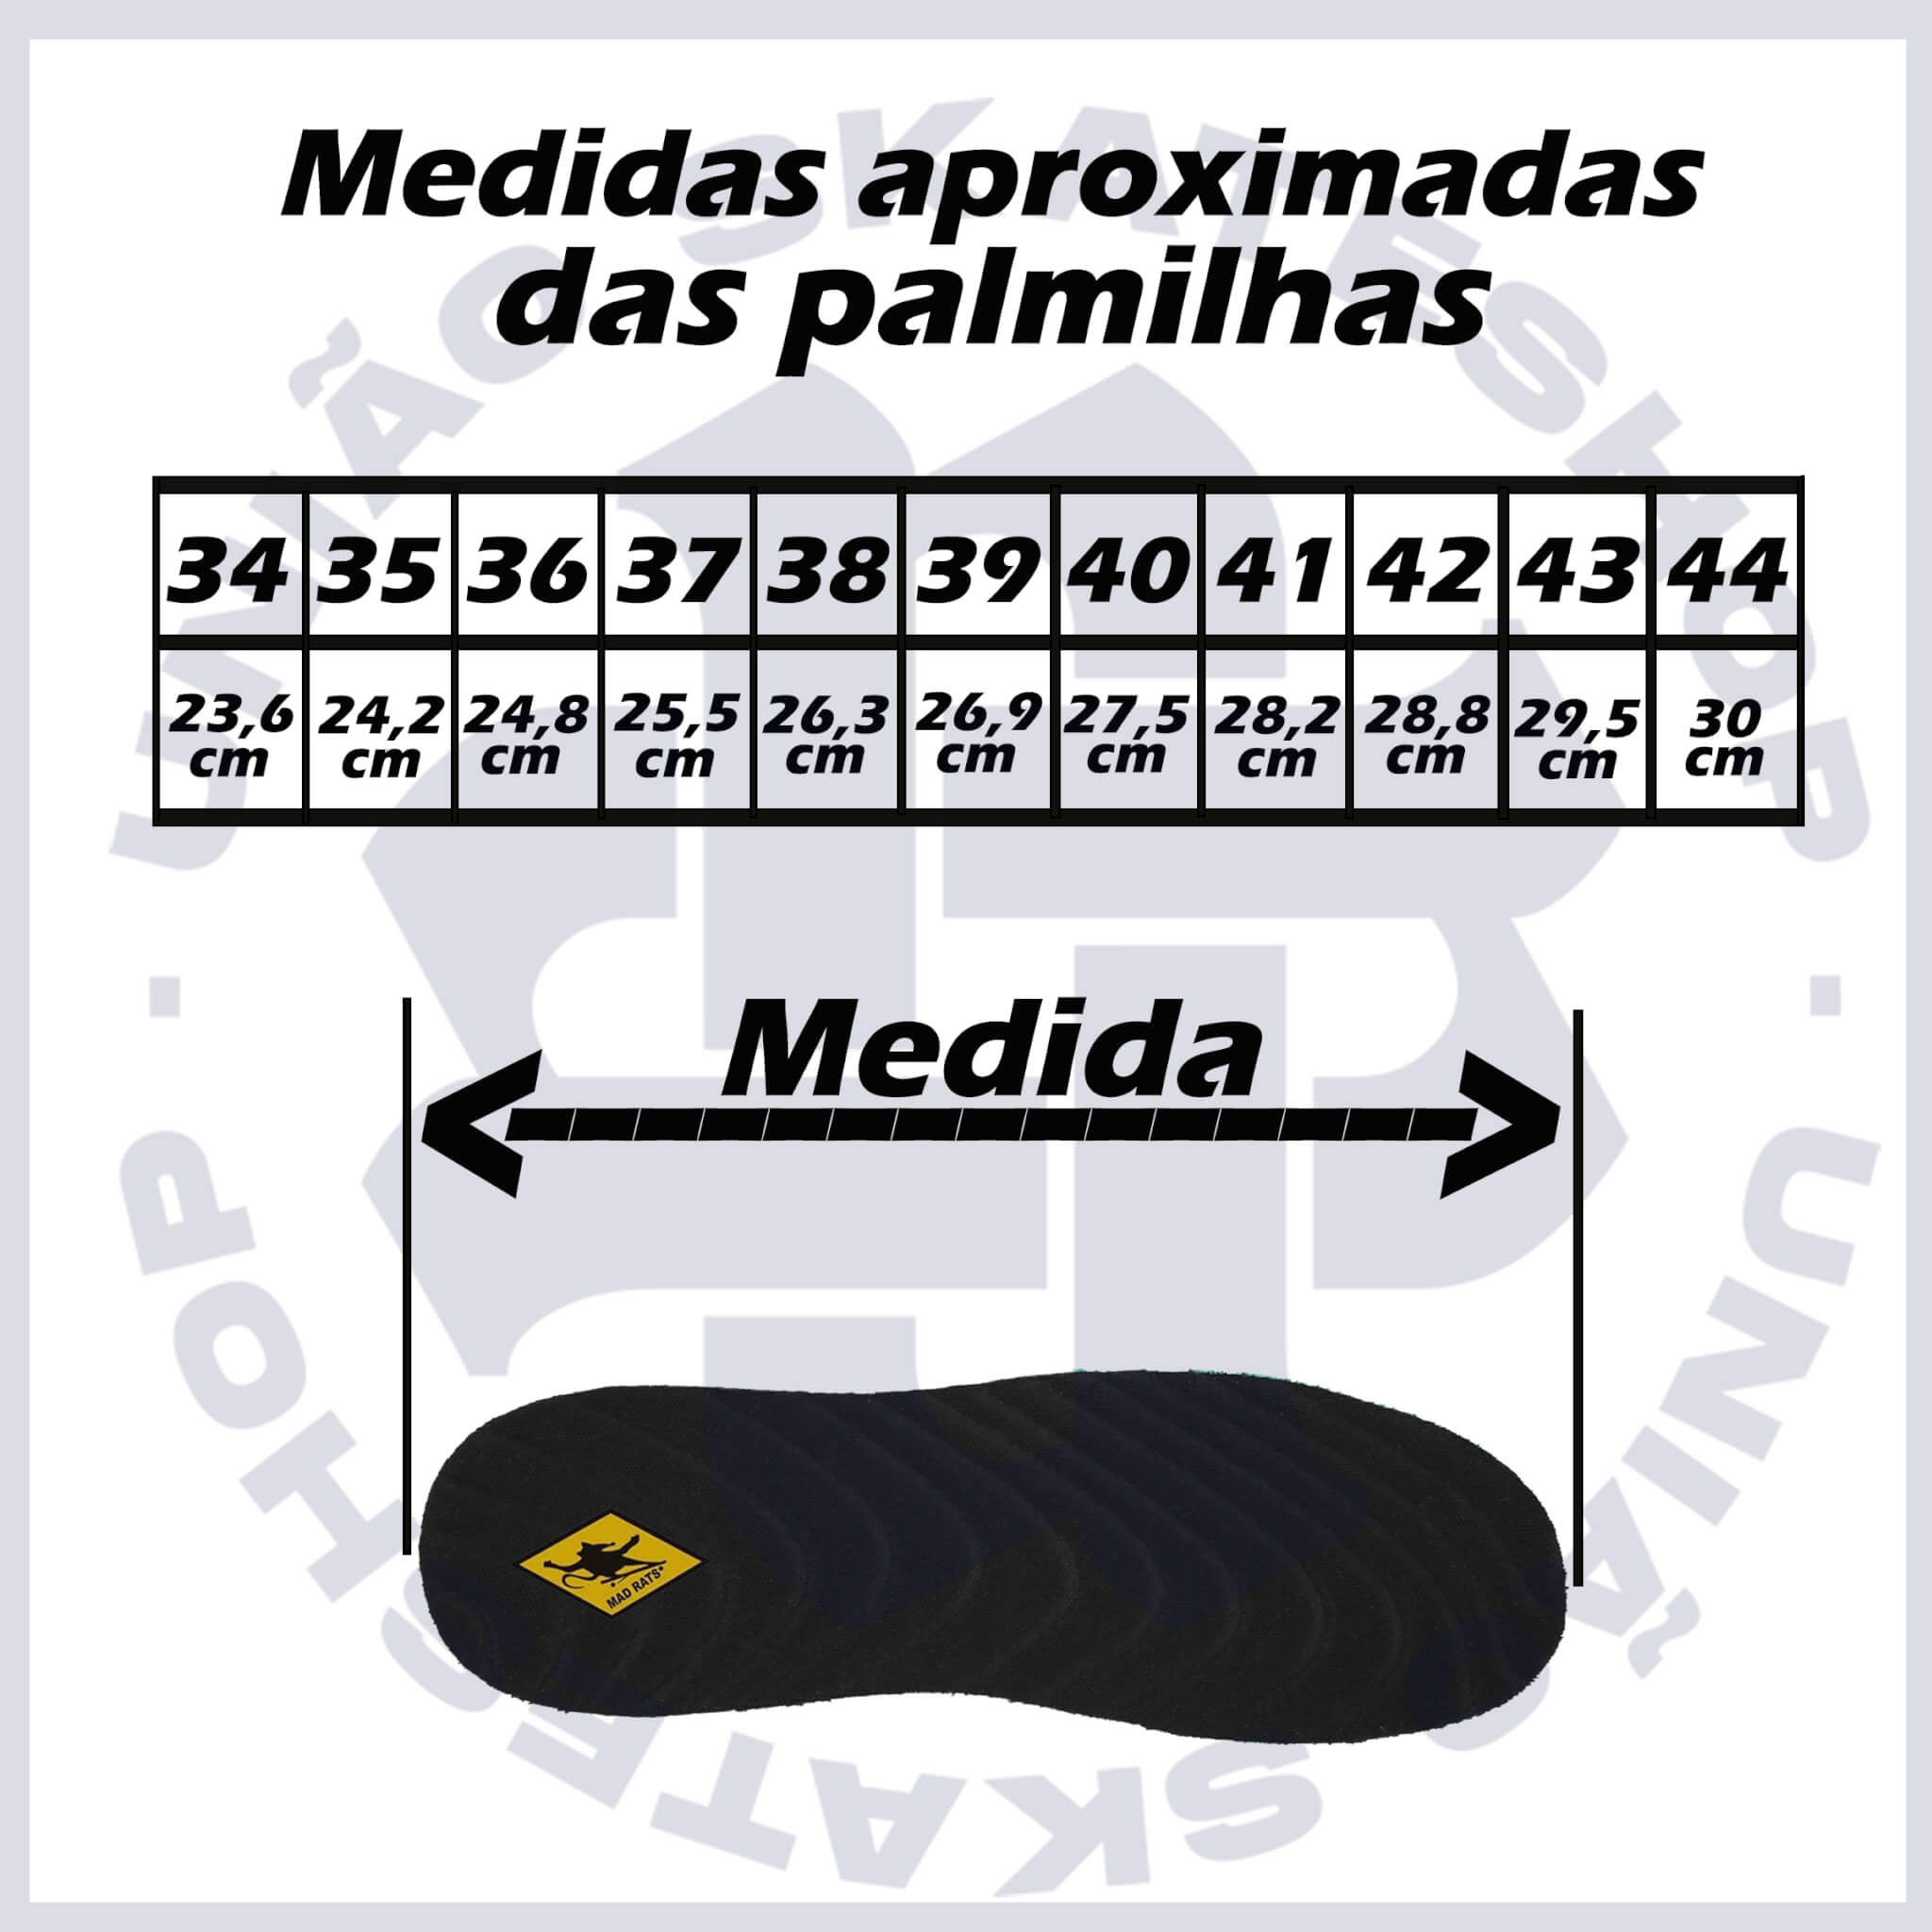 Tênis Mad Rats Old School Básico OS34LN 50000 - Preto/Branco (Camurça/Lona)  - Calçados Online Sandálias, Sapatos e Botas Femininas